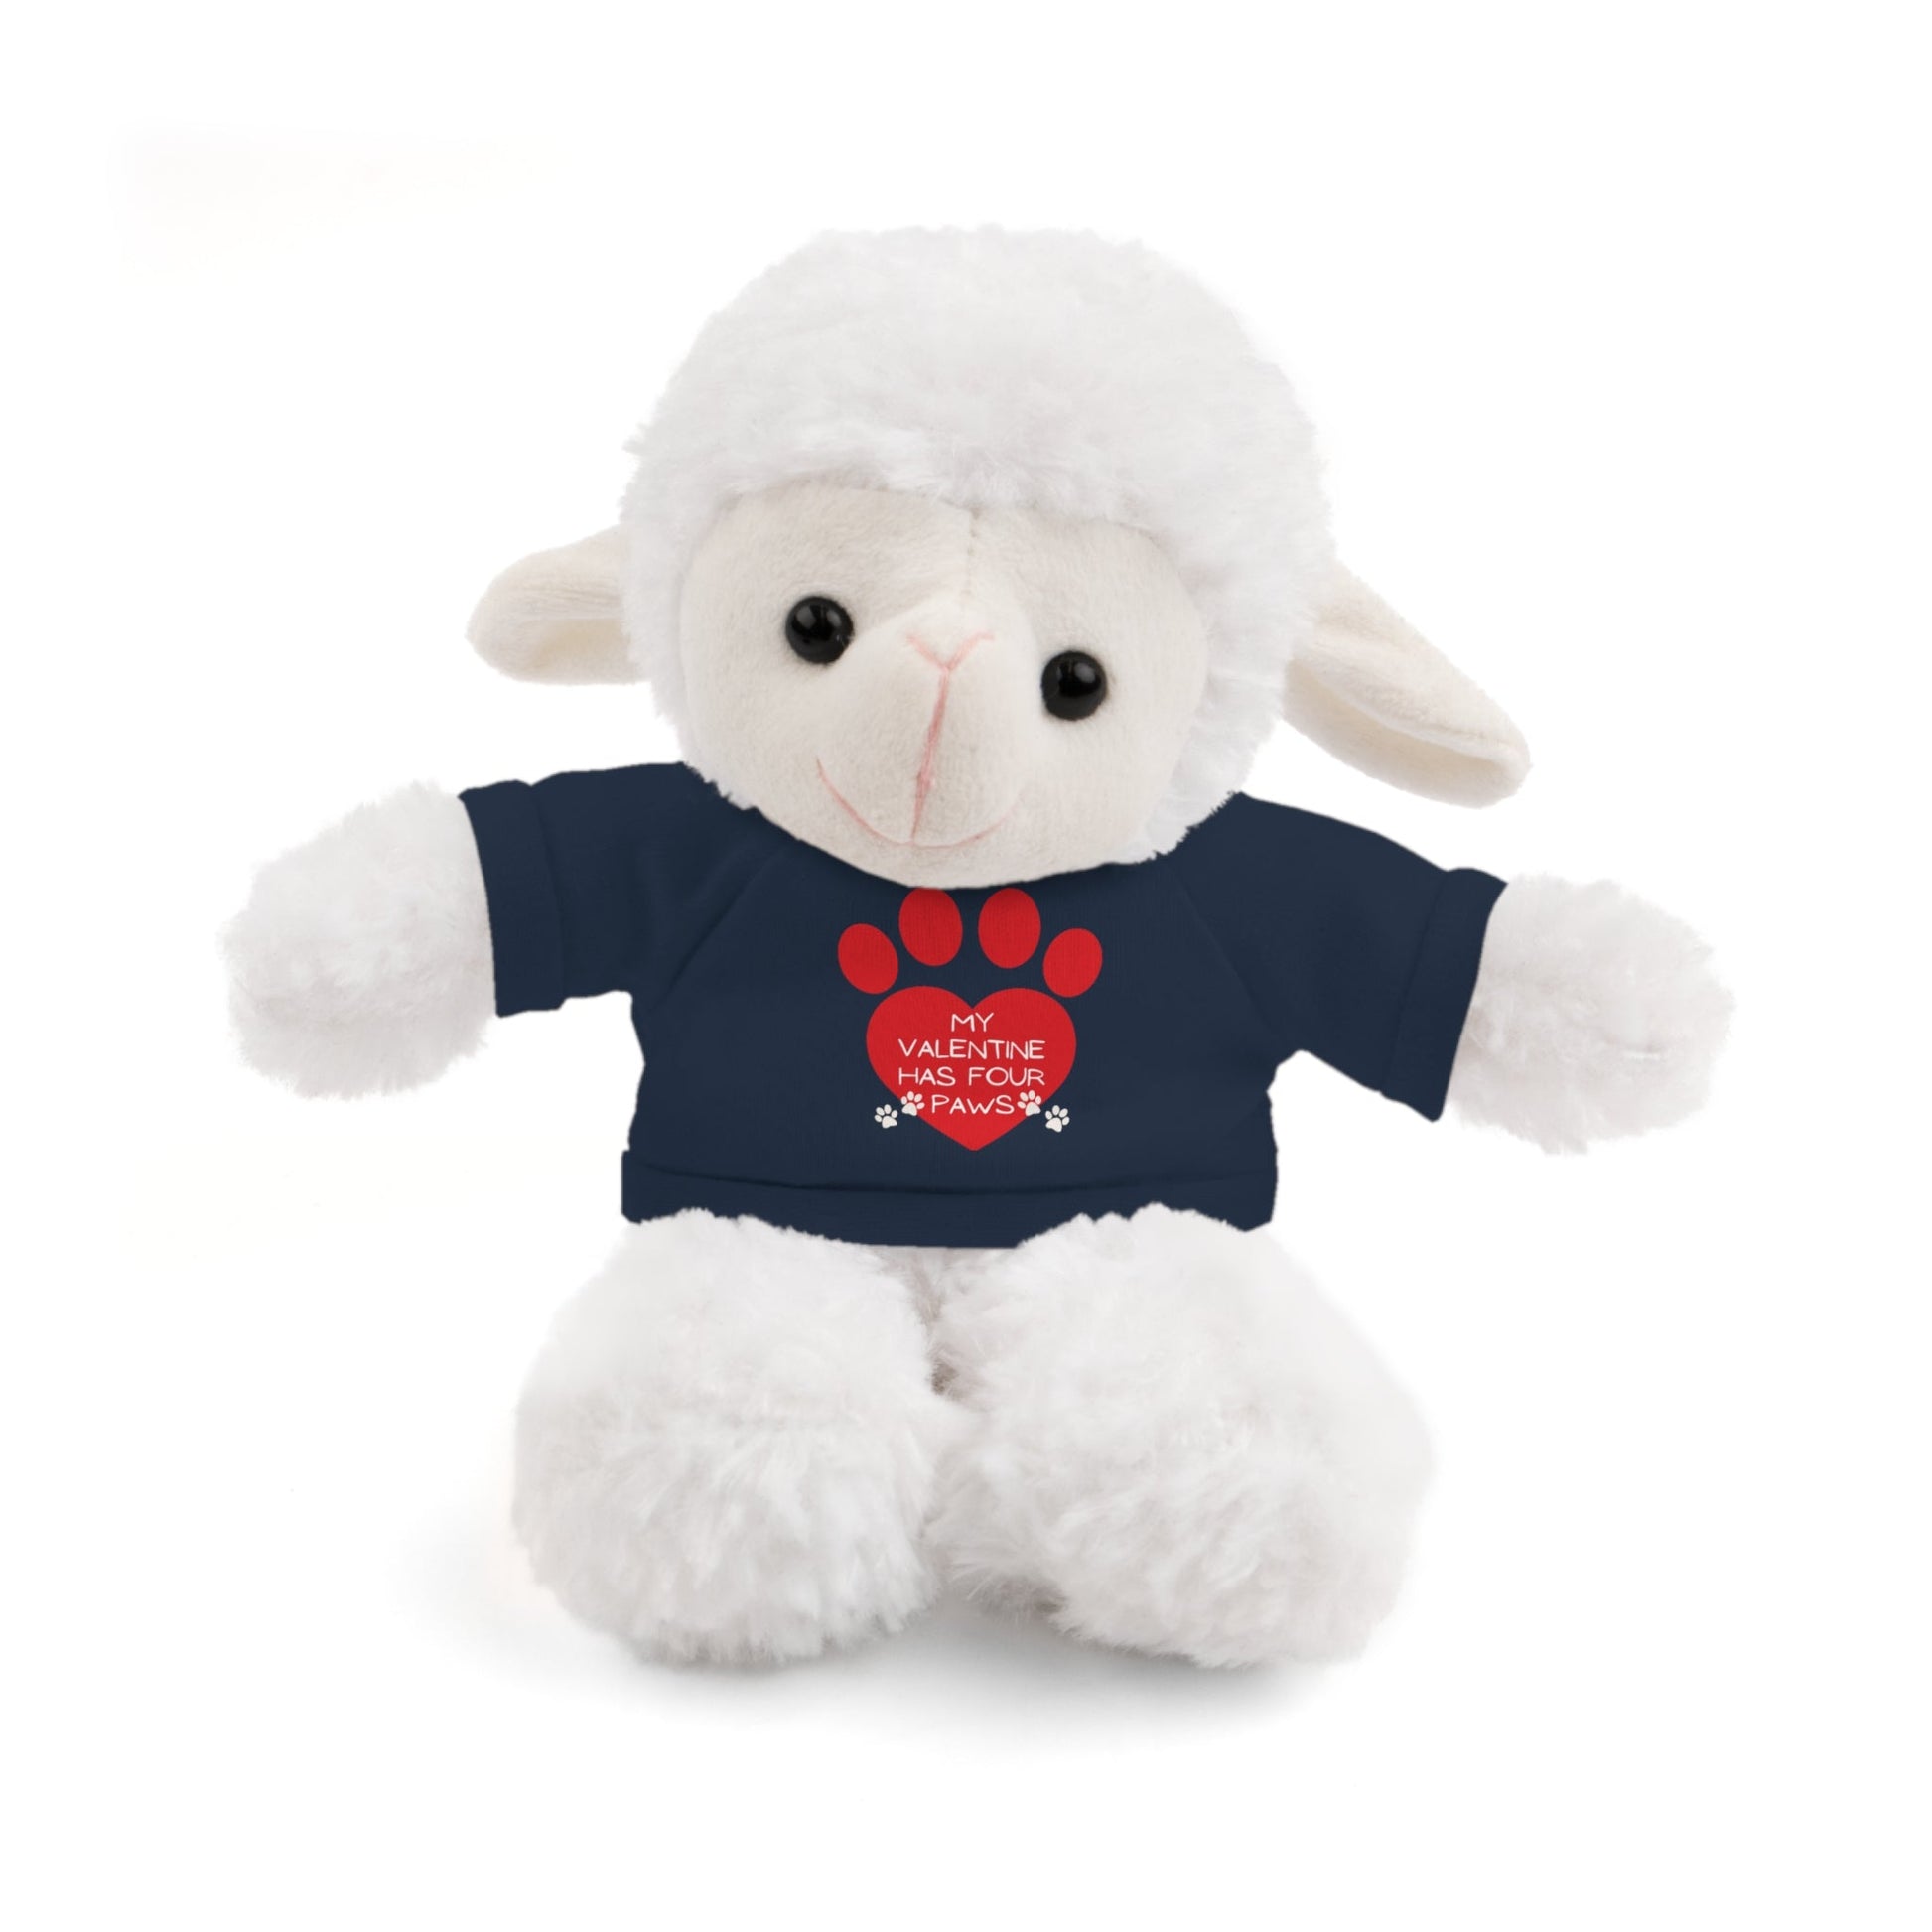 My Valentine Stuffed Animals - Navy / Sheep 8’ Accessories